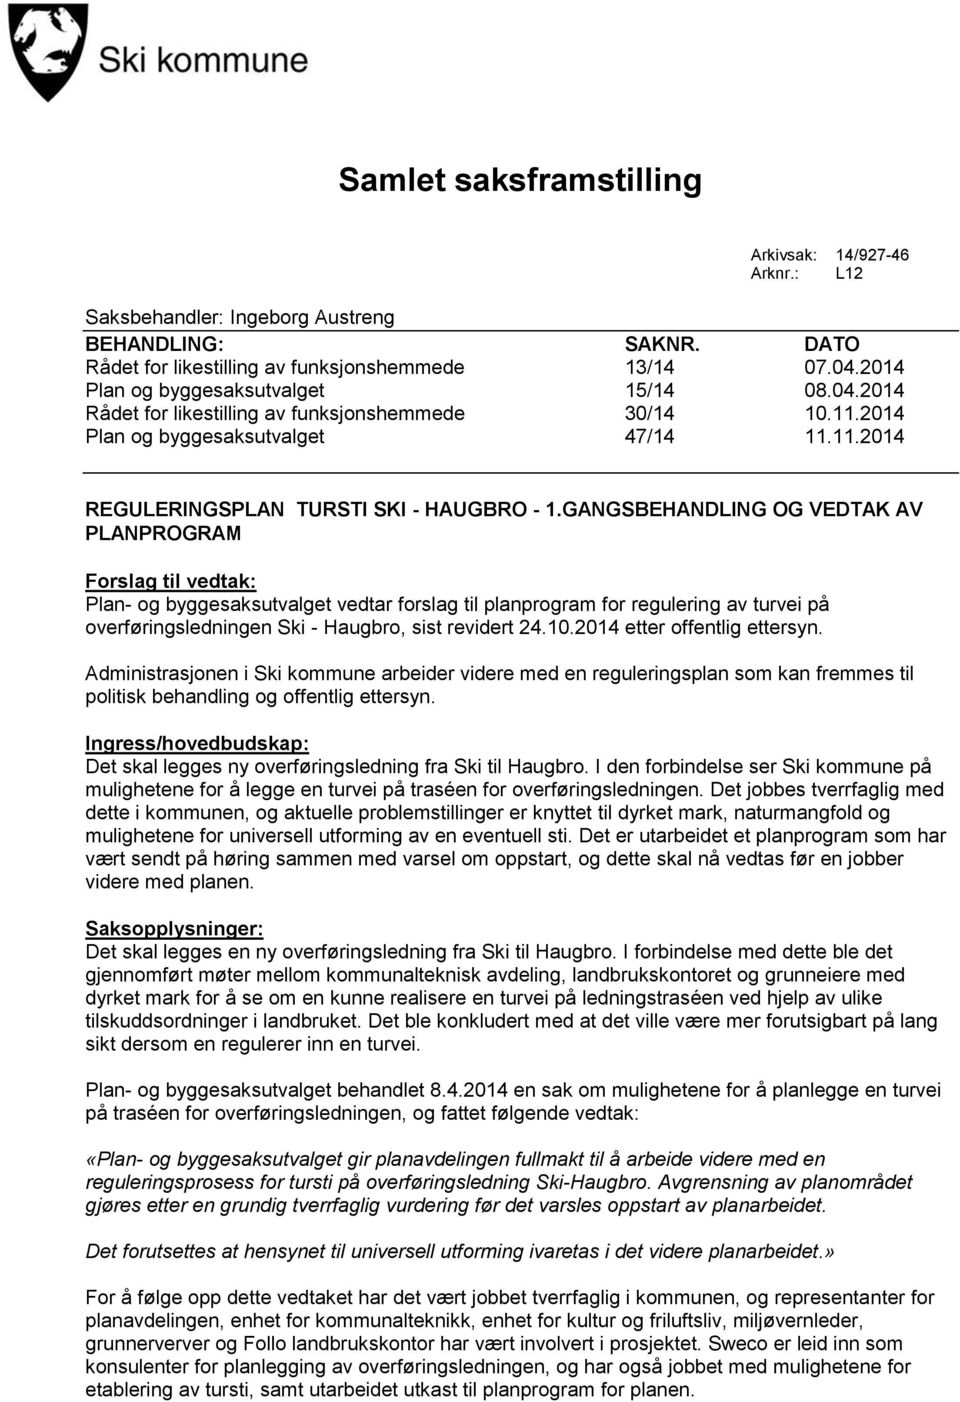 GANGSBEHANDLING OG VEDTAK AV PLANPROGRAM Forslag til vedtak: Plan- og byggesaksutvalget vedtar forslag til planprogram for regulering av turvei på overføringsledningen Ski - Haugbro, sist revidert 24.